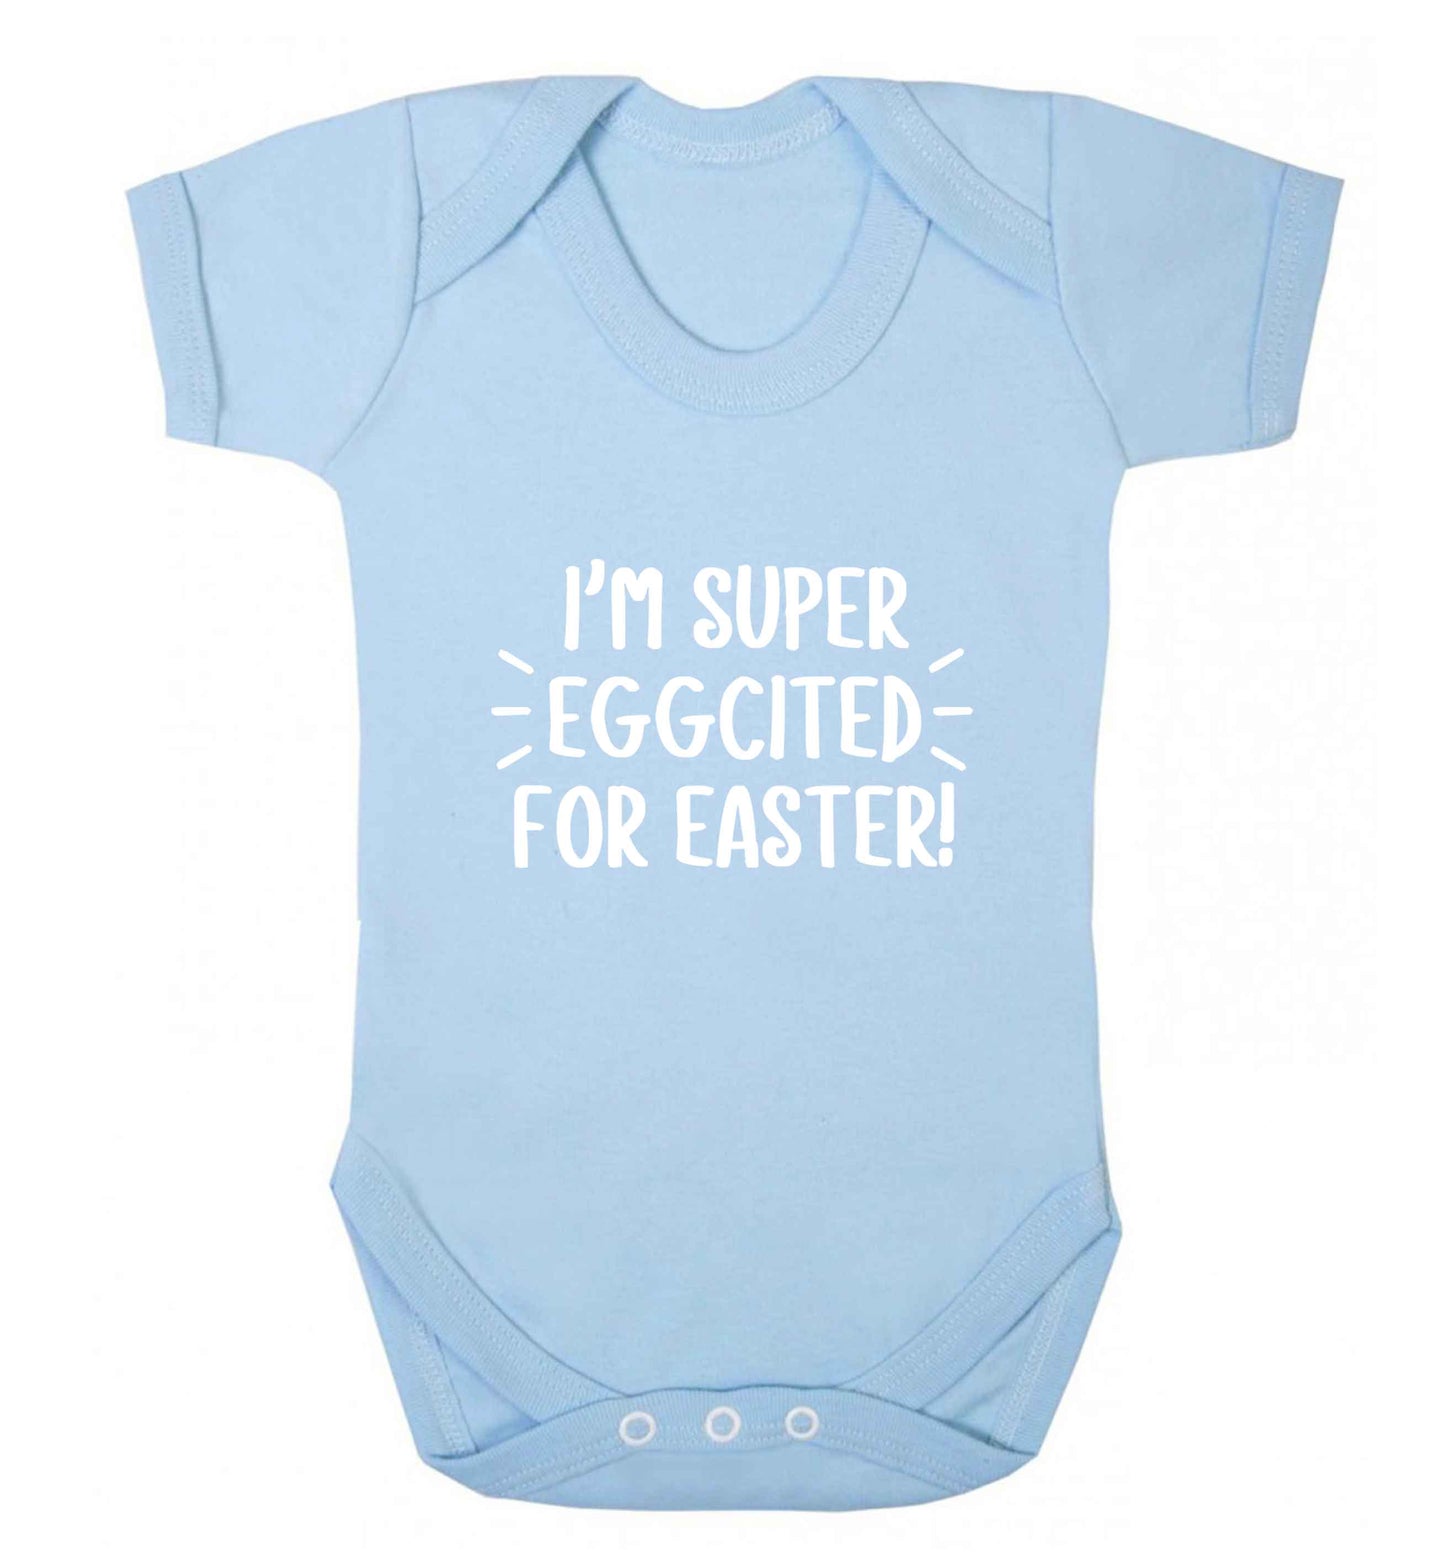 I'm super eggcited for Easter baby vest pale blue 18-24 months